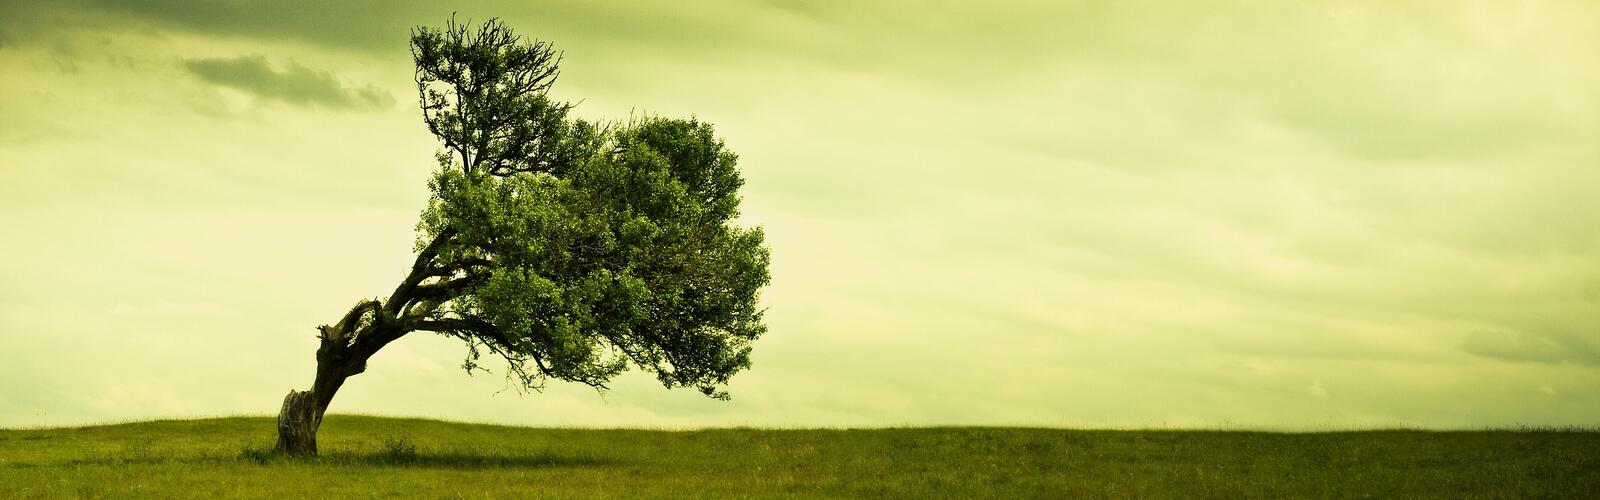 Бесплатное фото Одинокое дерево наклоненное от сильного ветра